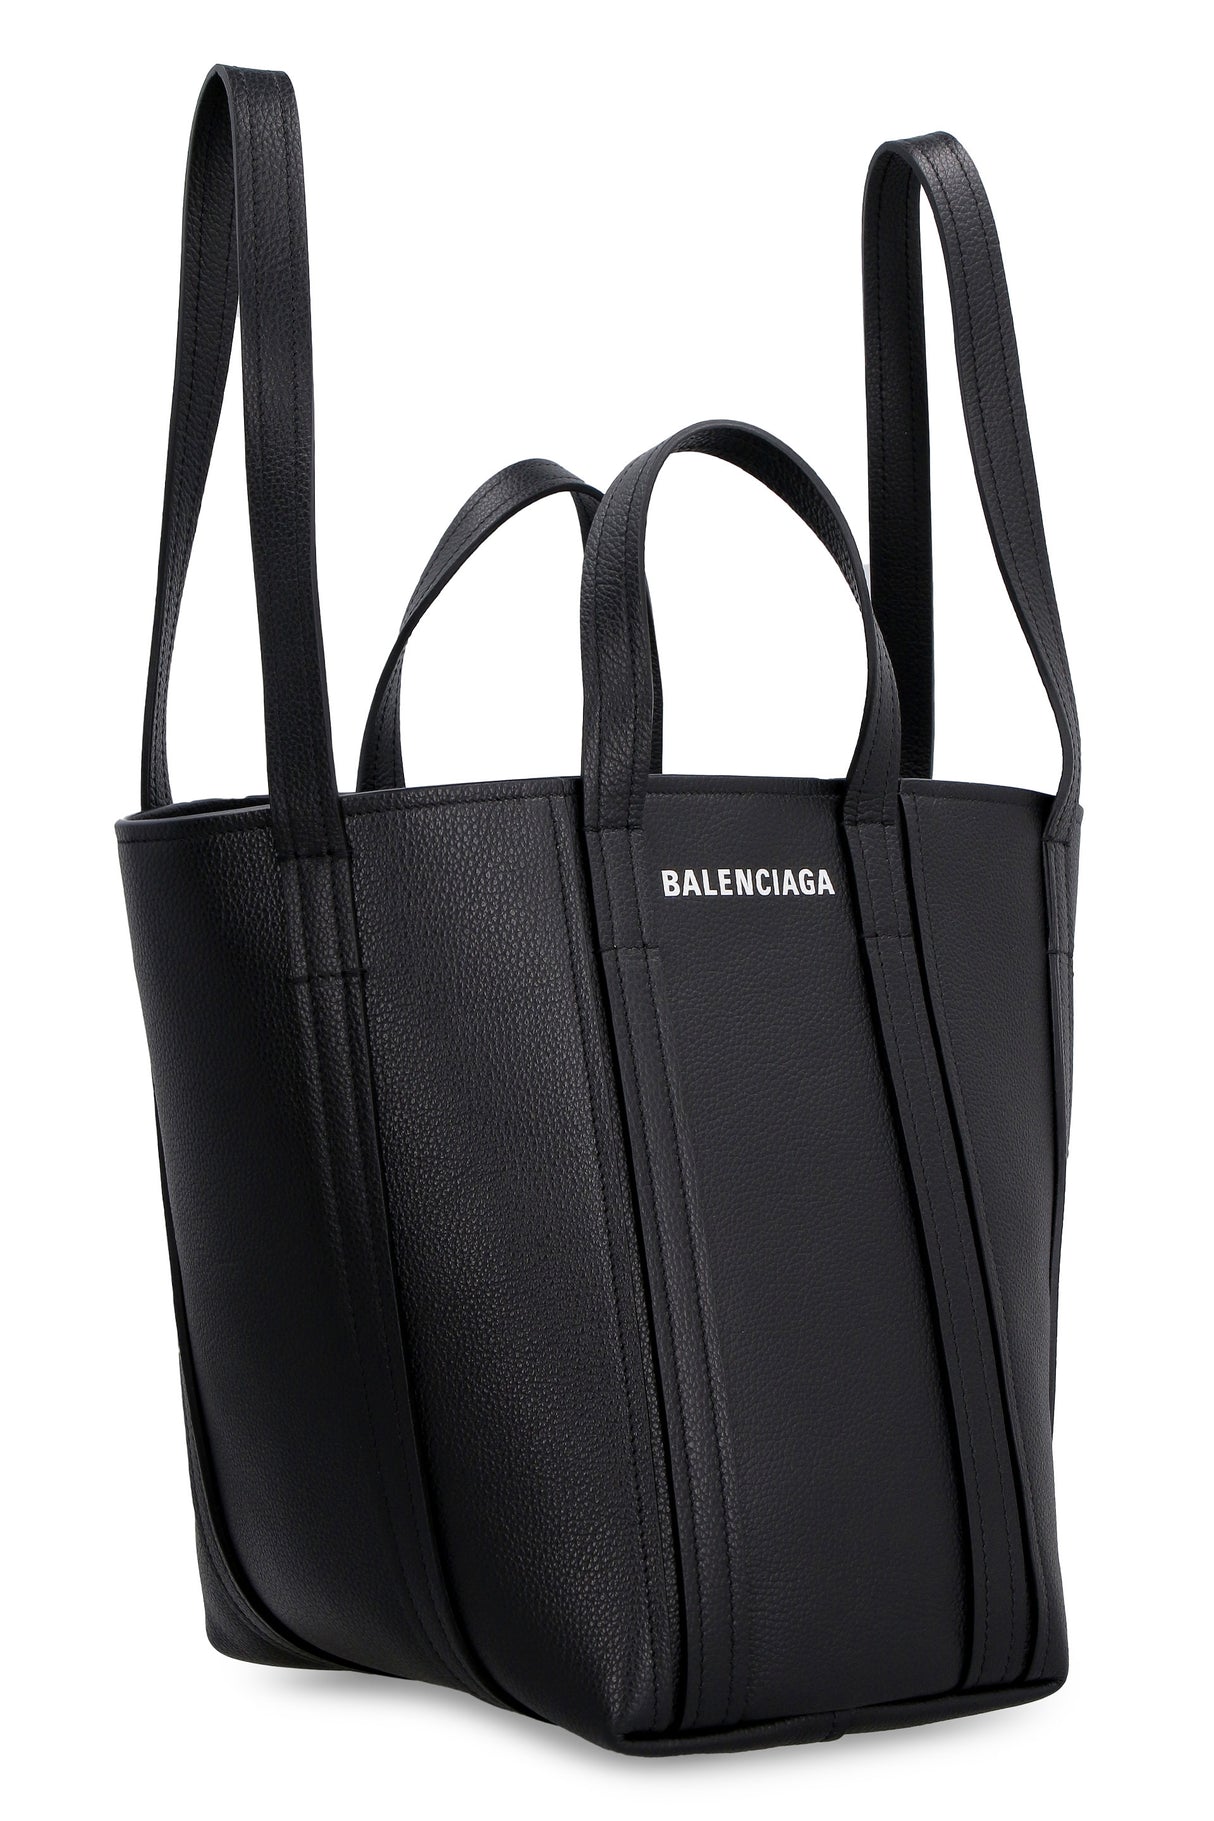 Elegant Small Black Handbag for Women